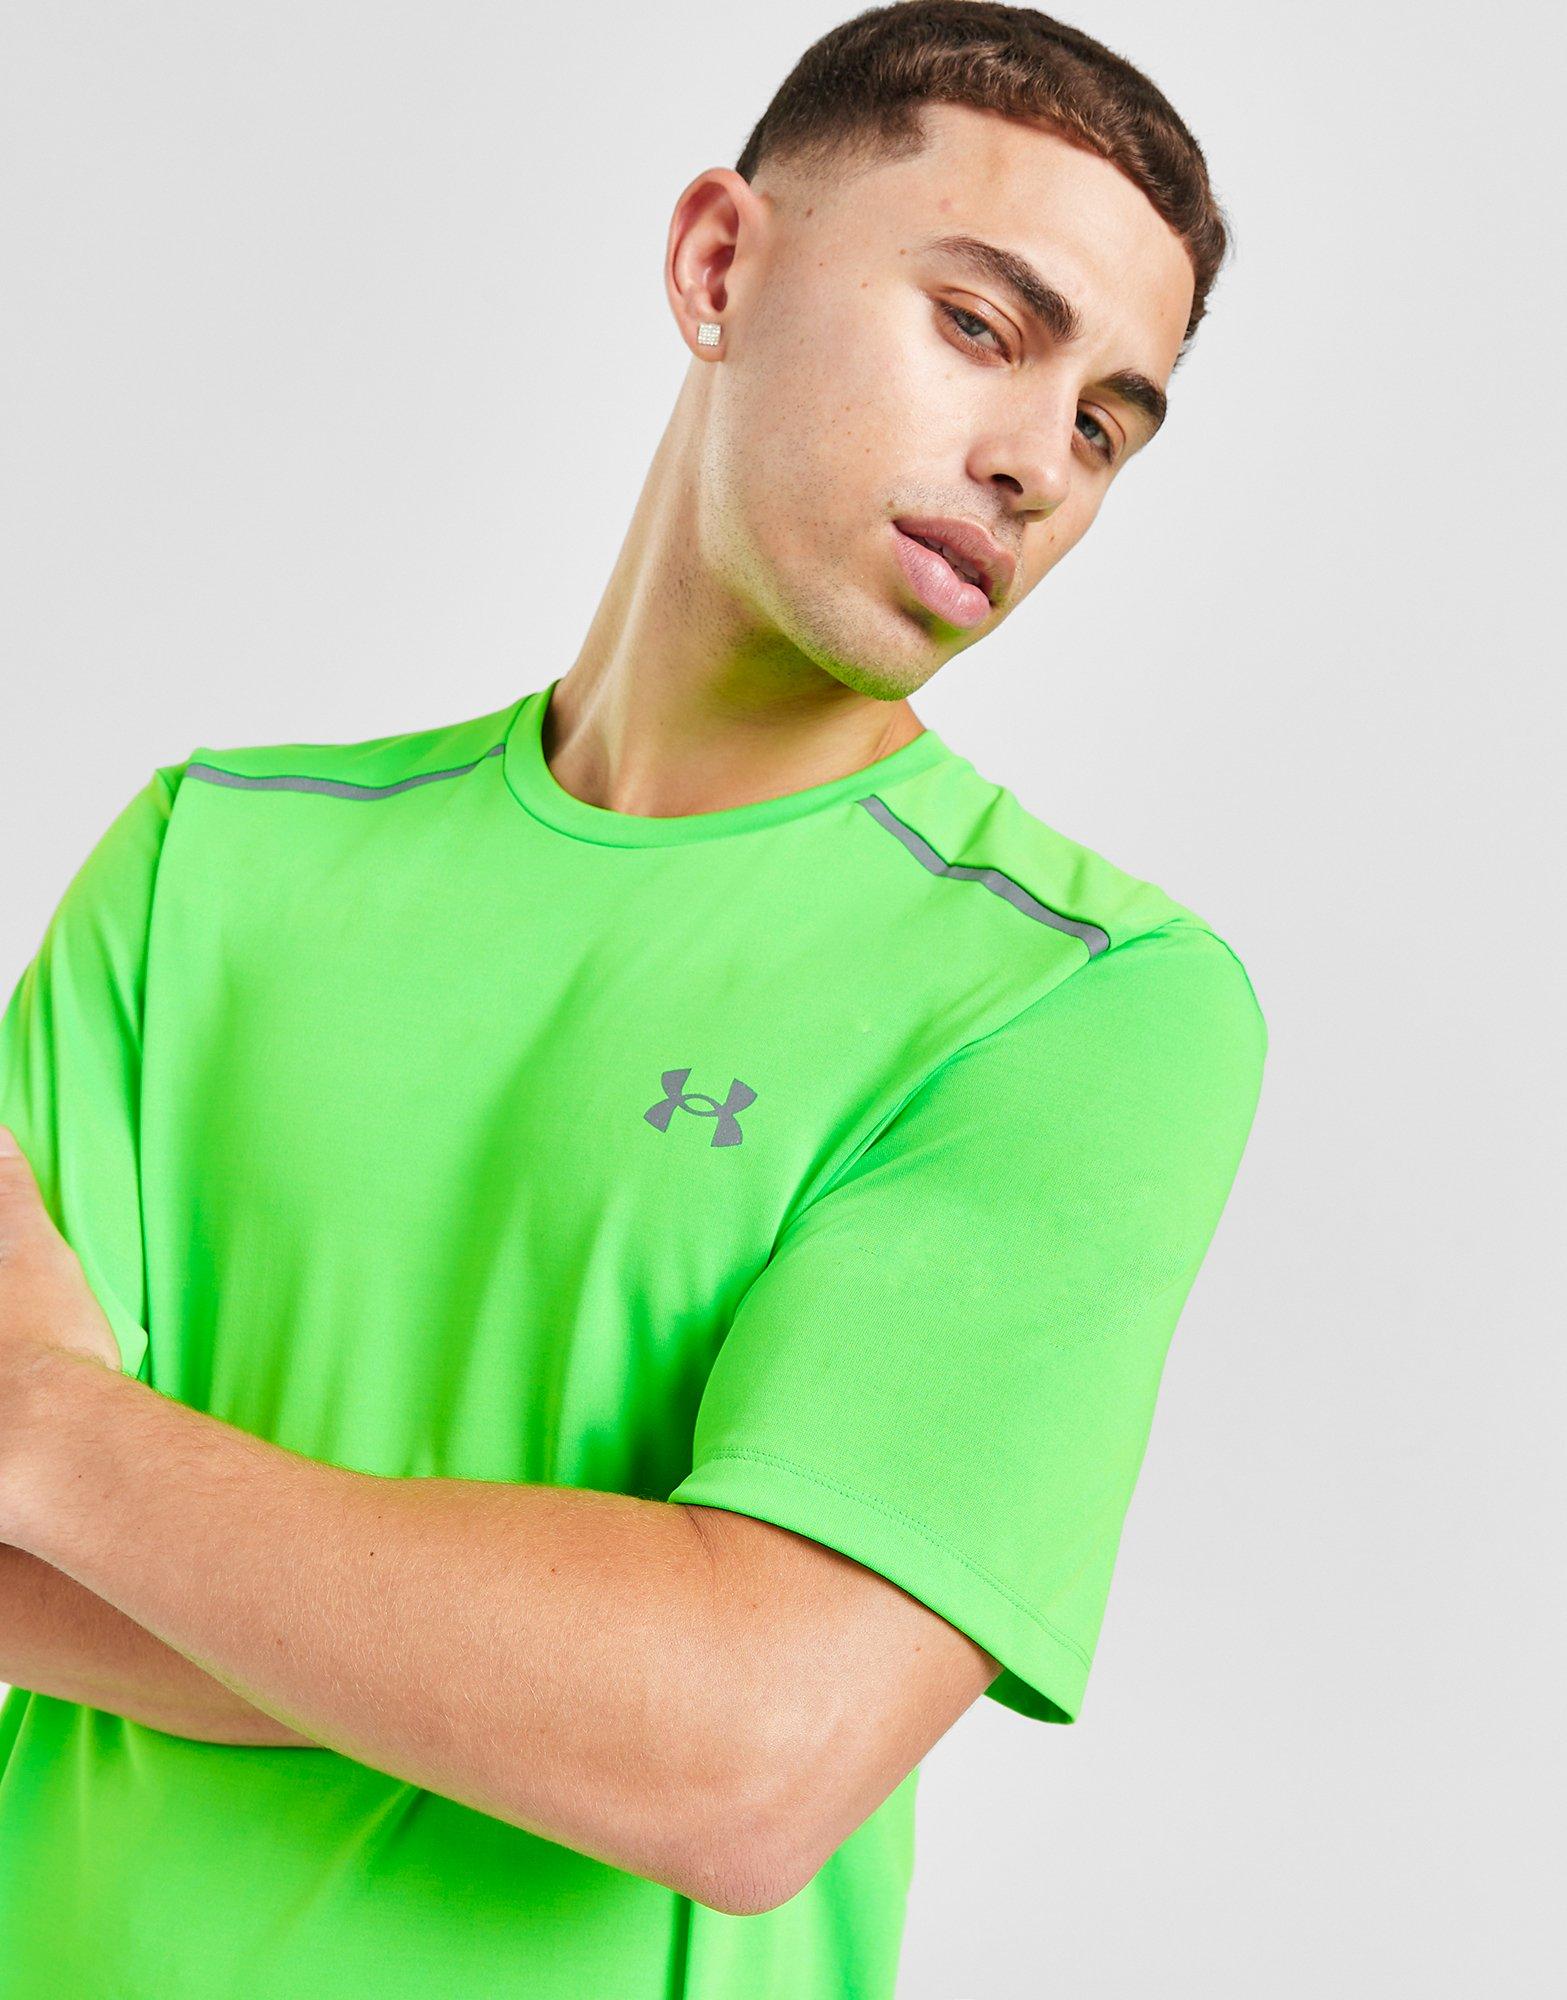 Green Under Armour Tech - JD Sports Reflective T-Shirt Global